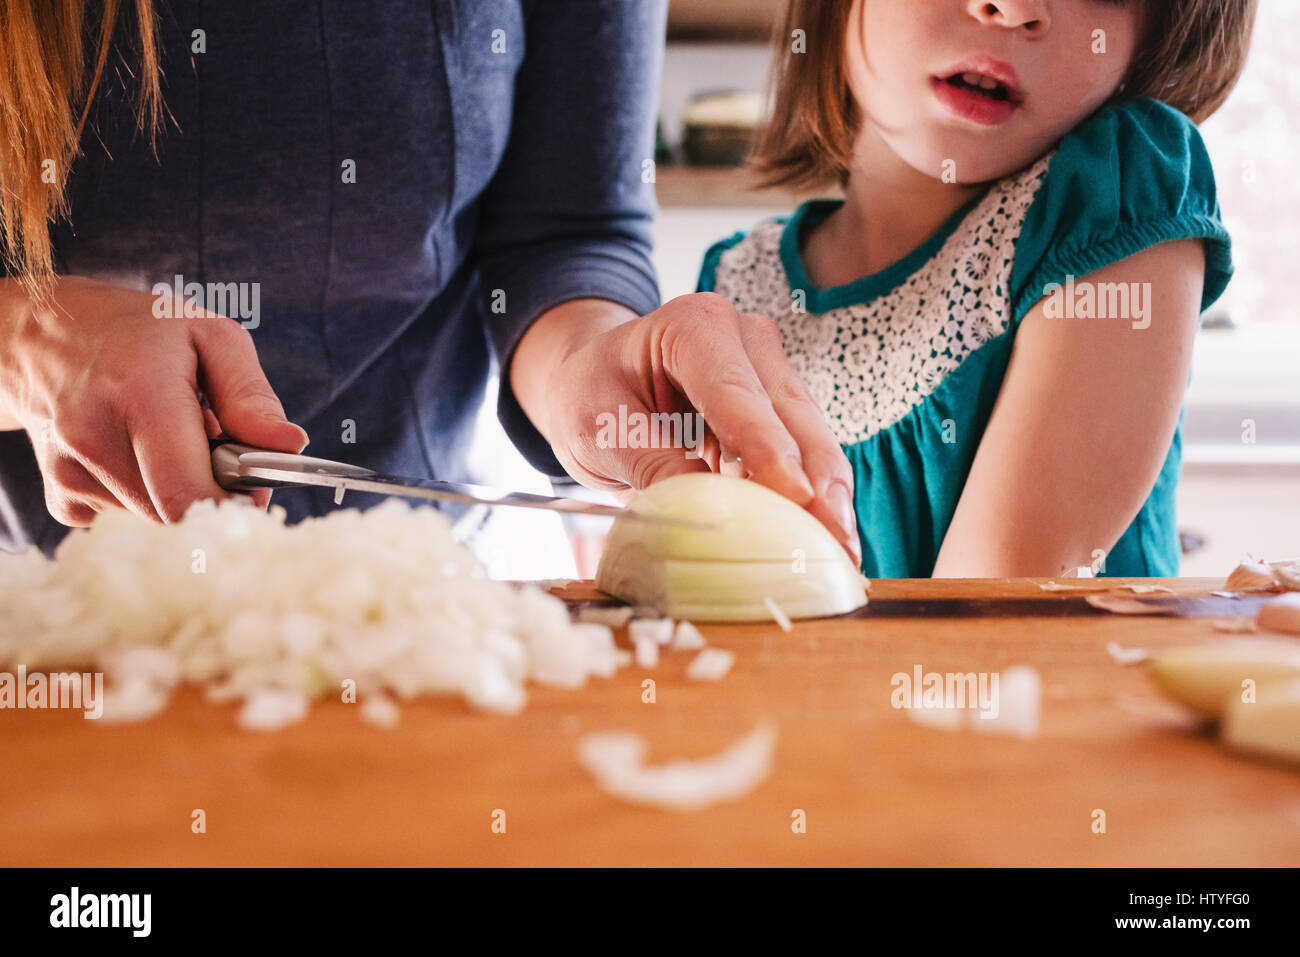 Madre enseñarle a su hija a picar cebolla Foto de stock